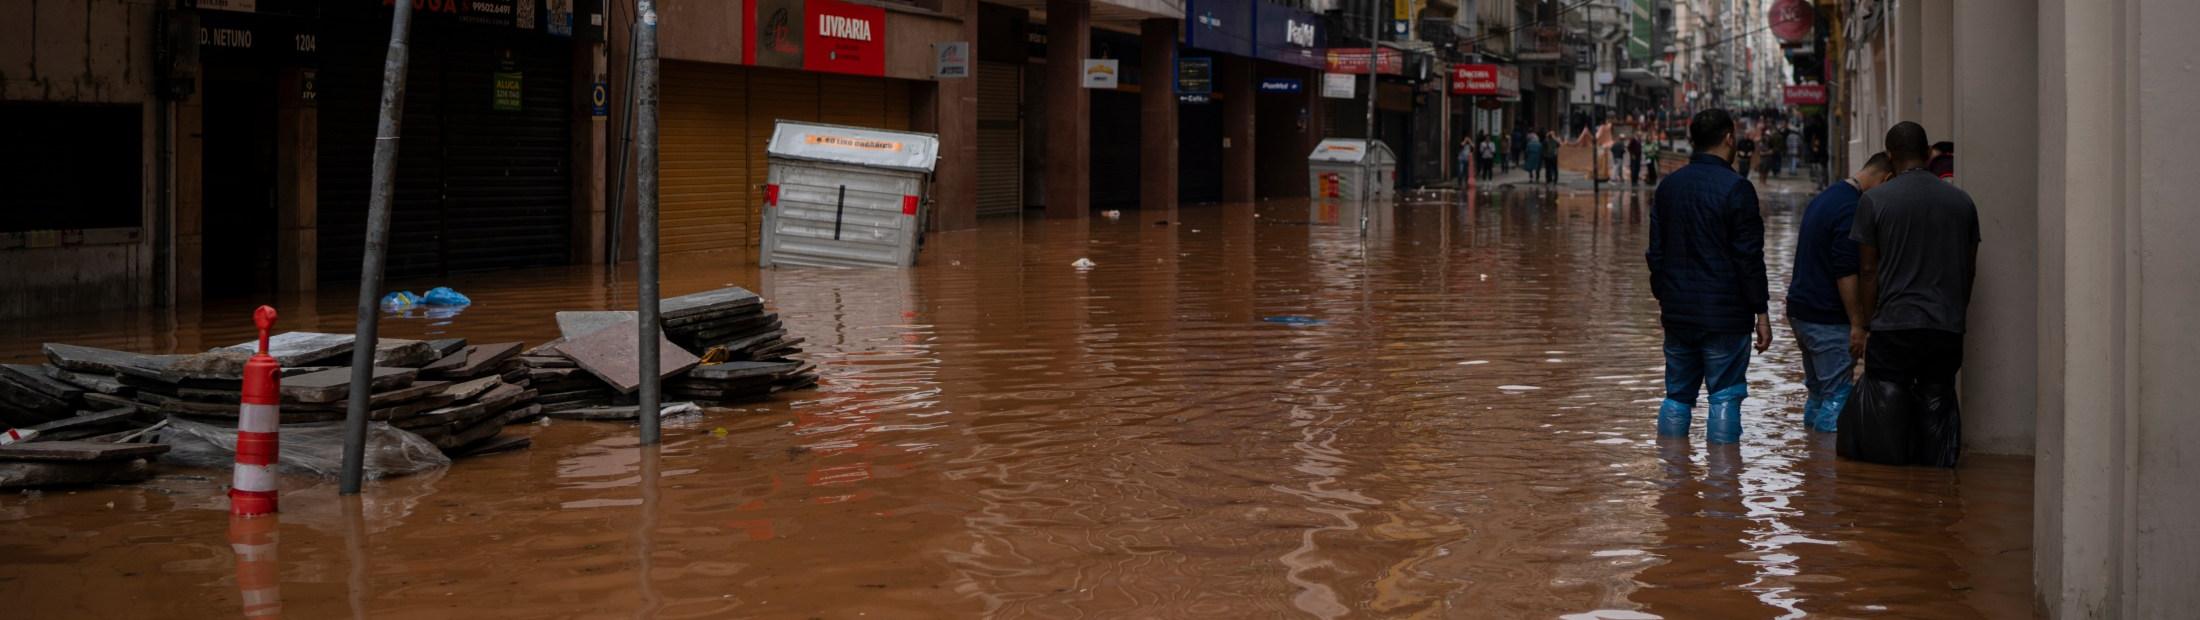 Inundaciones en el sur de Brasil: ACNUR ayuda a las personas afectadas